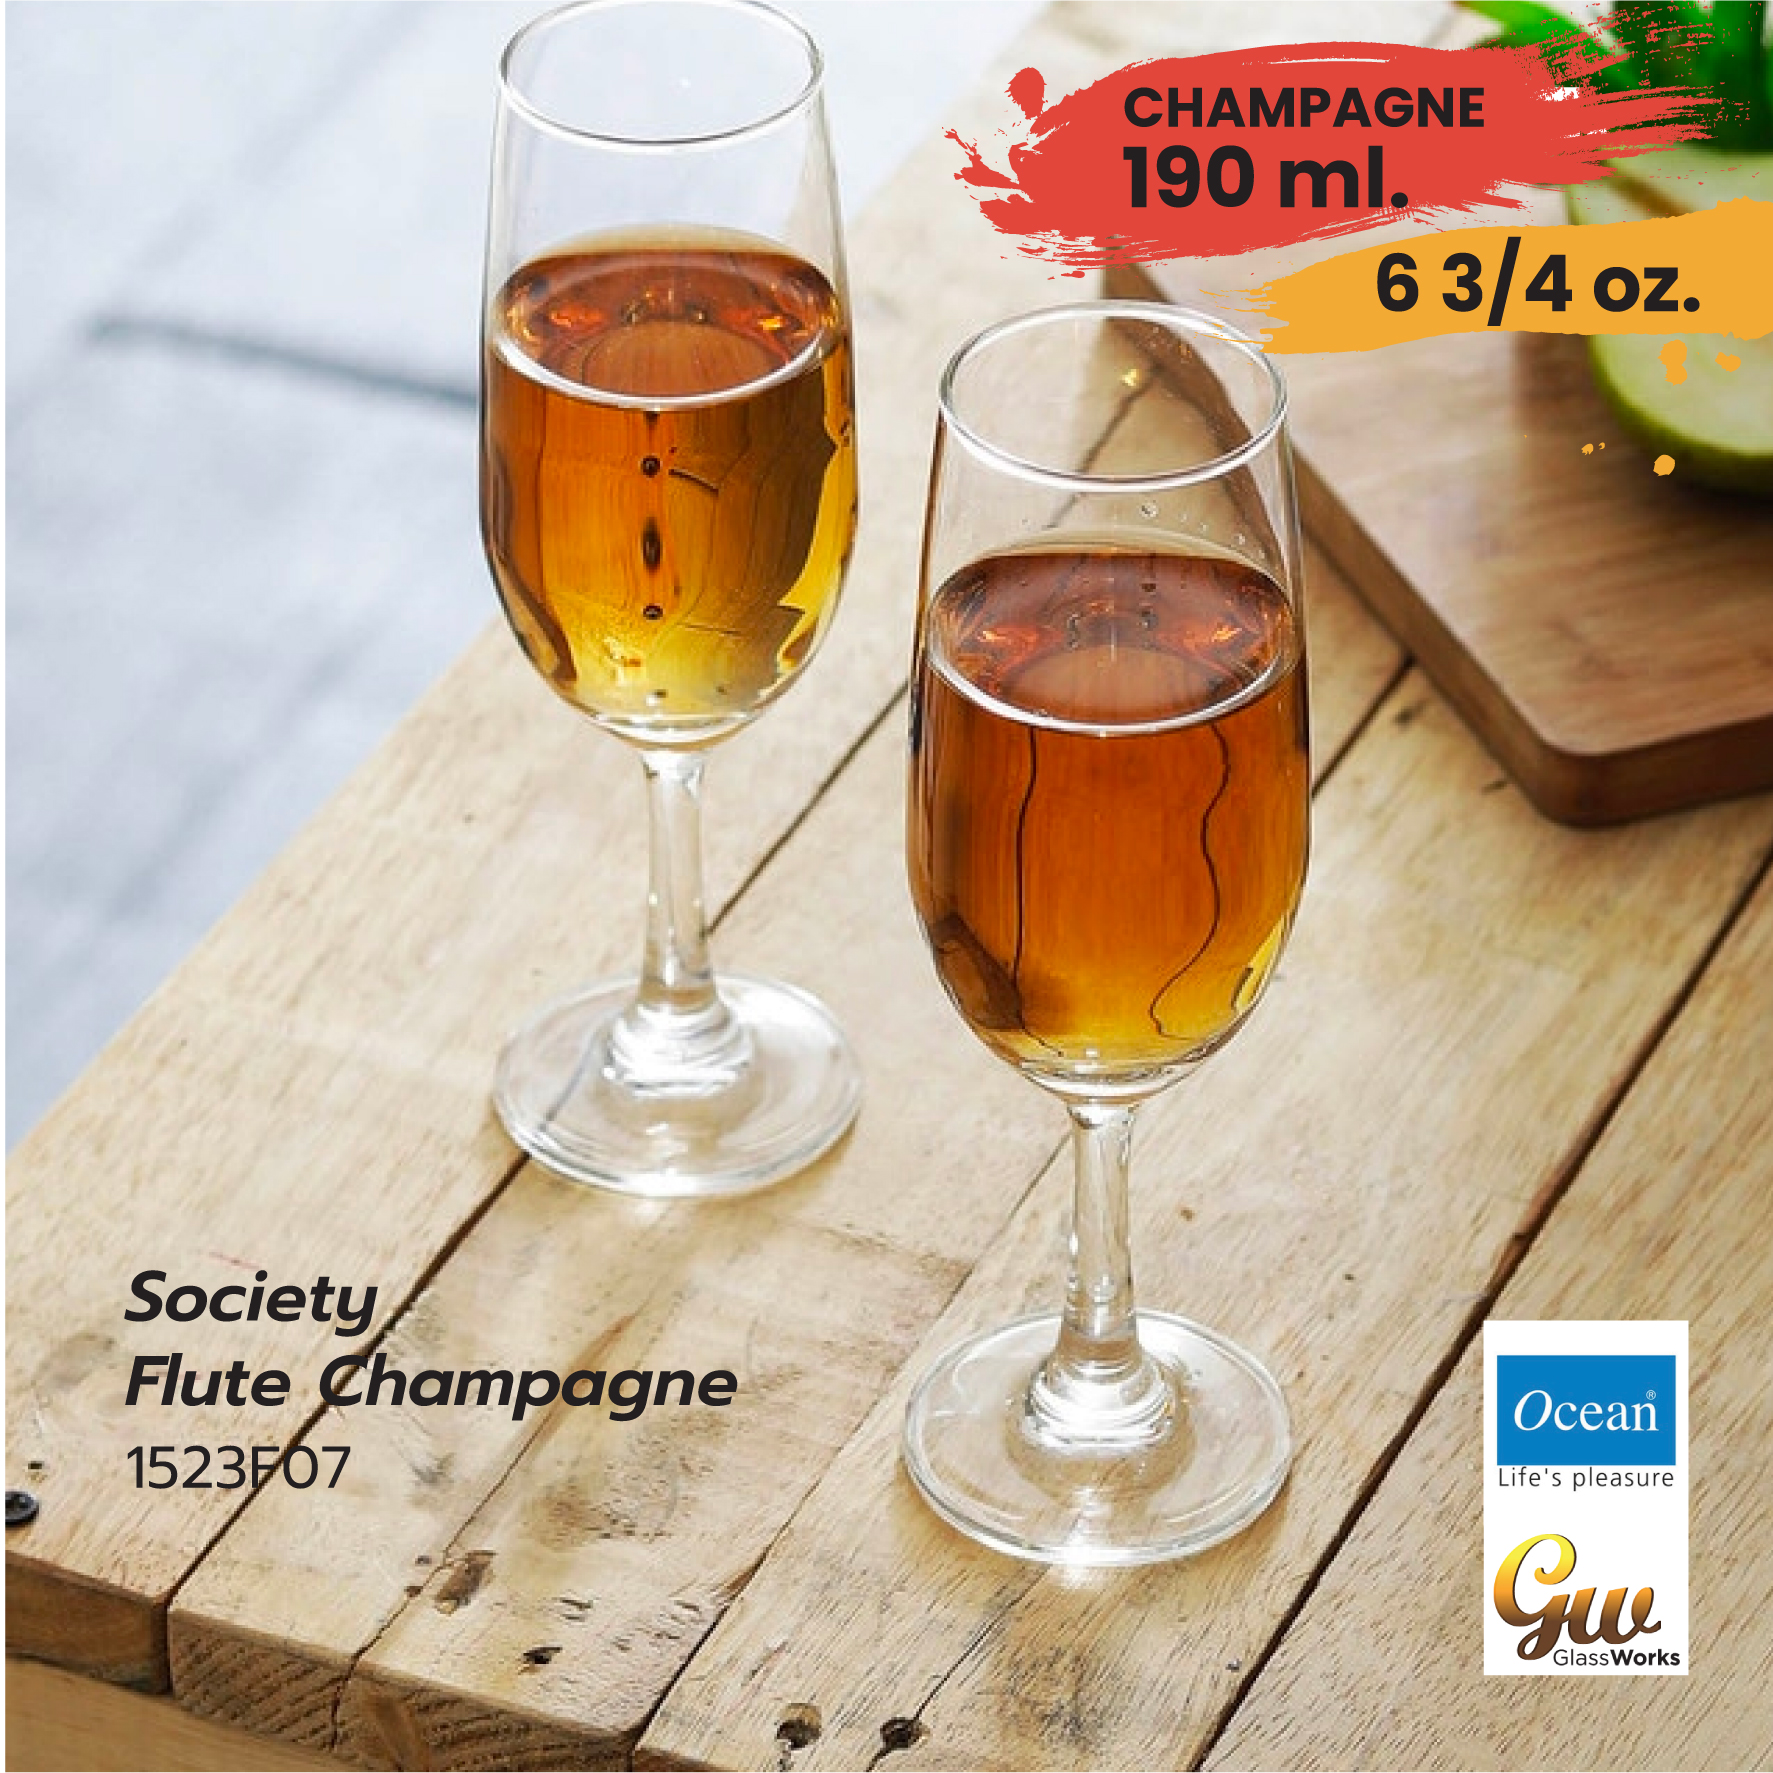 แก้วไวน์ แชมเปญ แก้วโอเชี่ยน Champagne Glass Ocean Glass 6 3/4 oz (190 ml)1523F07  Society Flute Champagne pack 1 pcs.